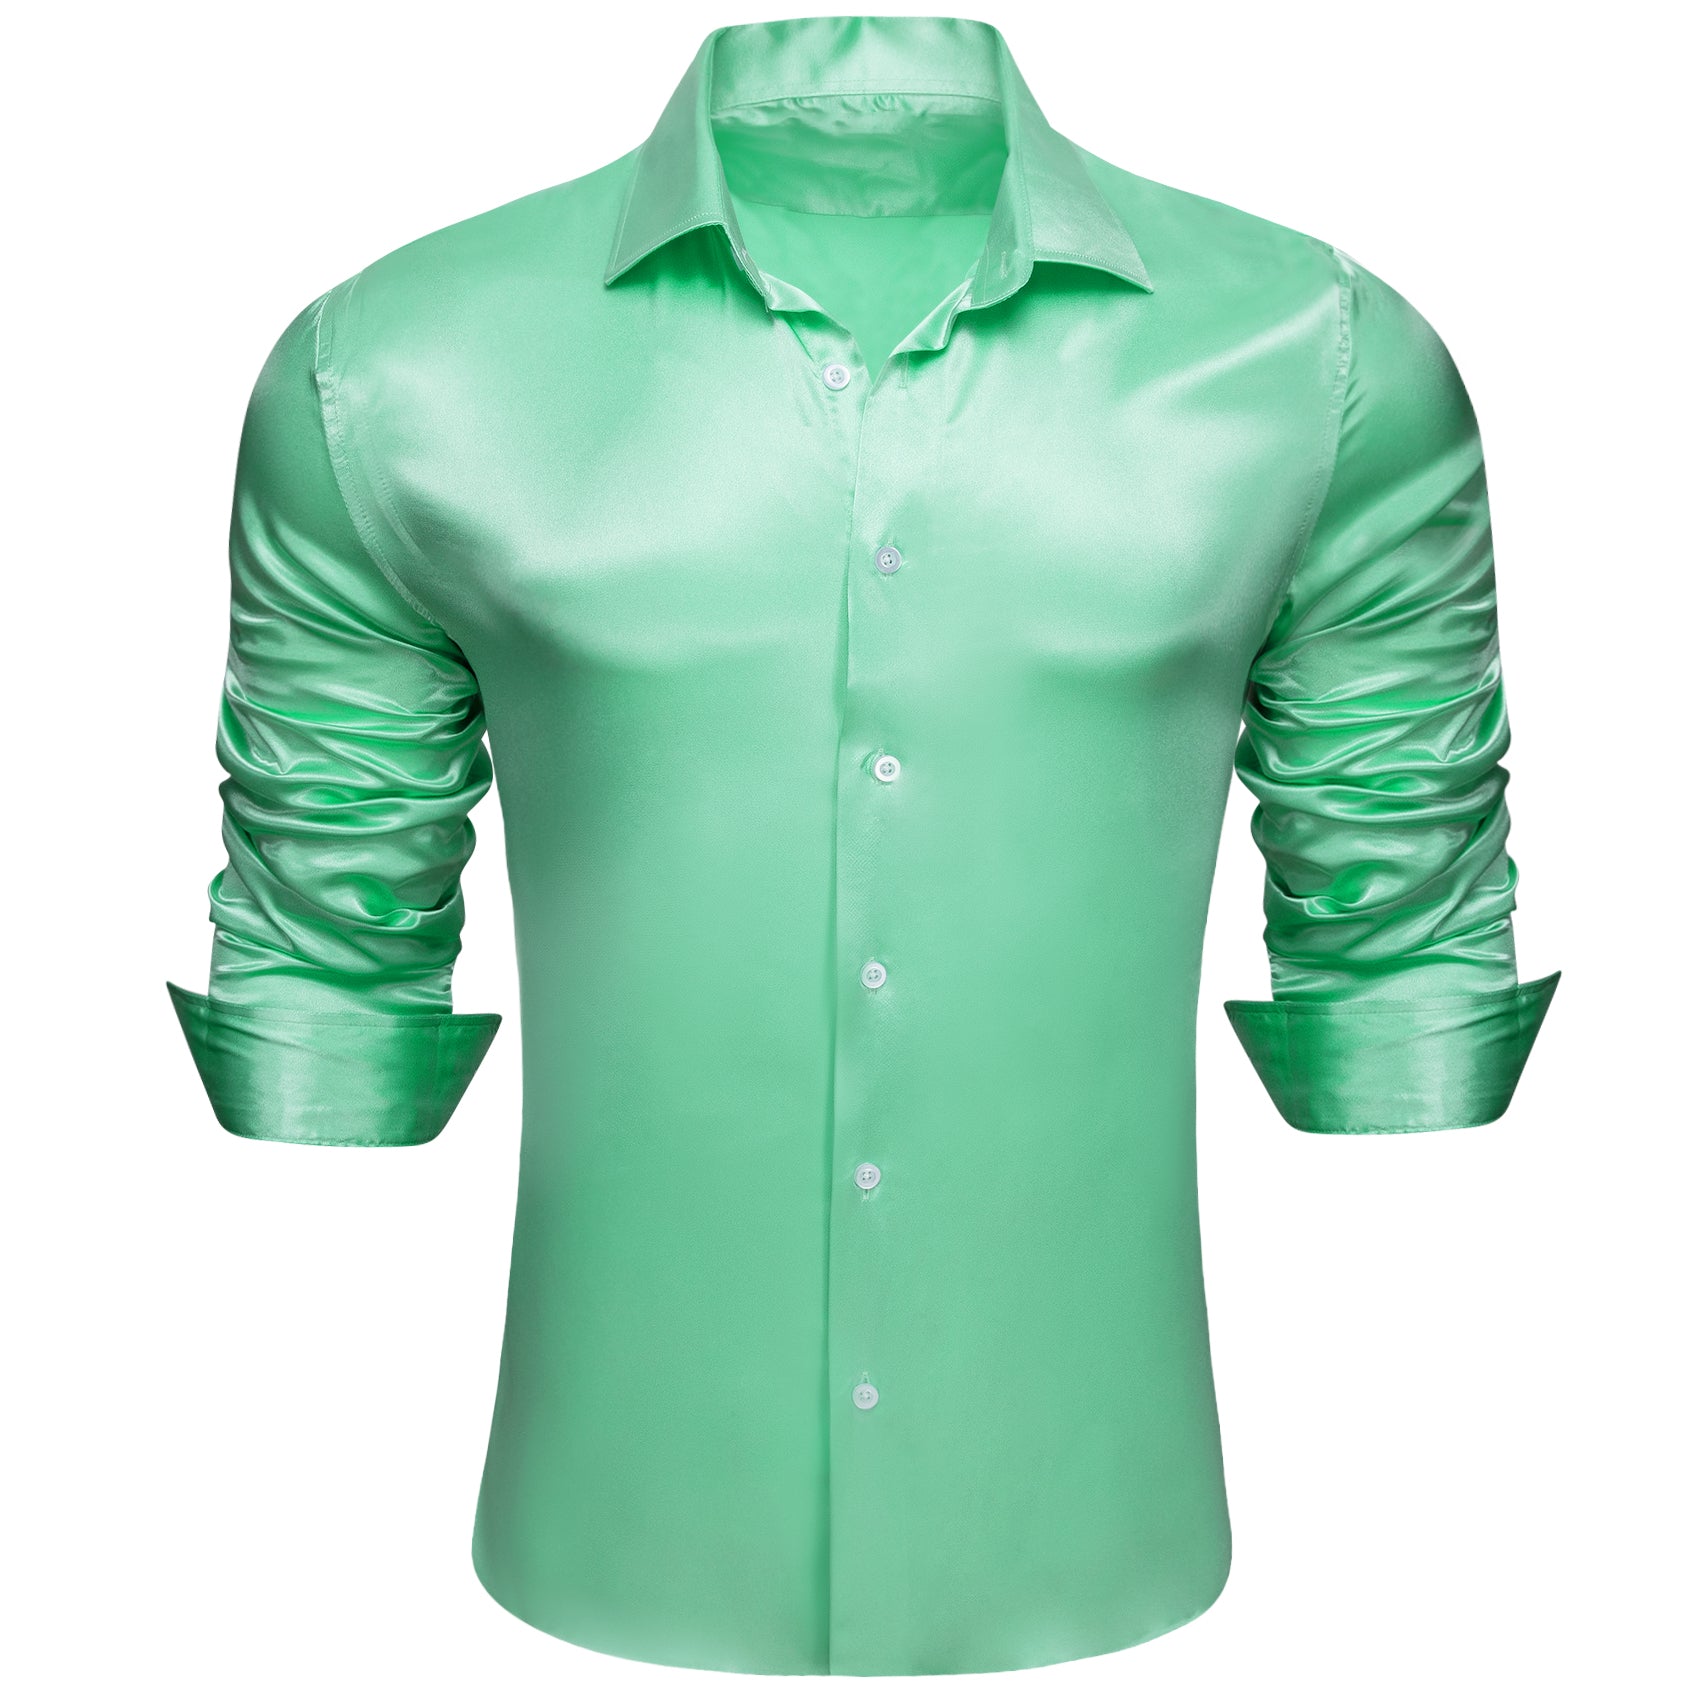 Barry.wang Fashion Green Solid Silk Men's Long Sleeve Shirt